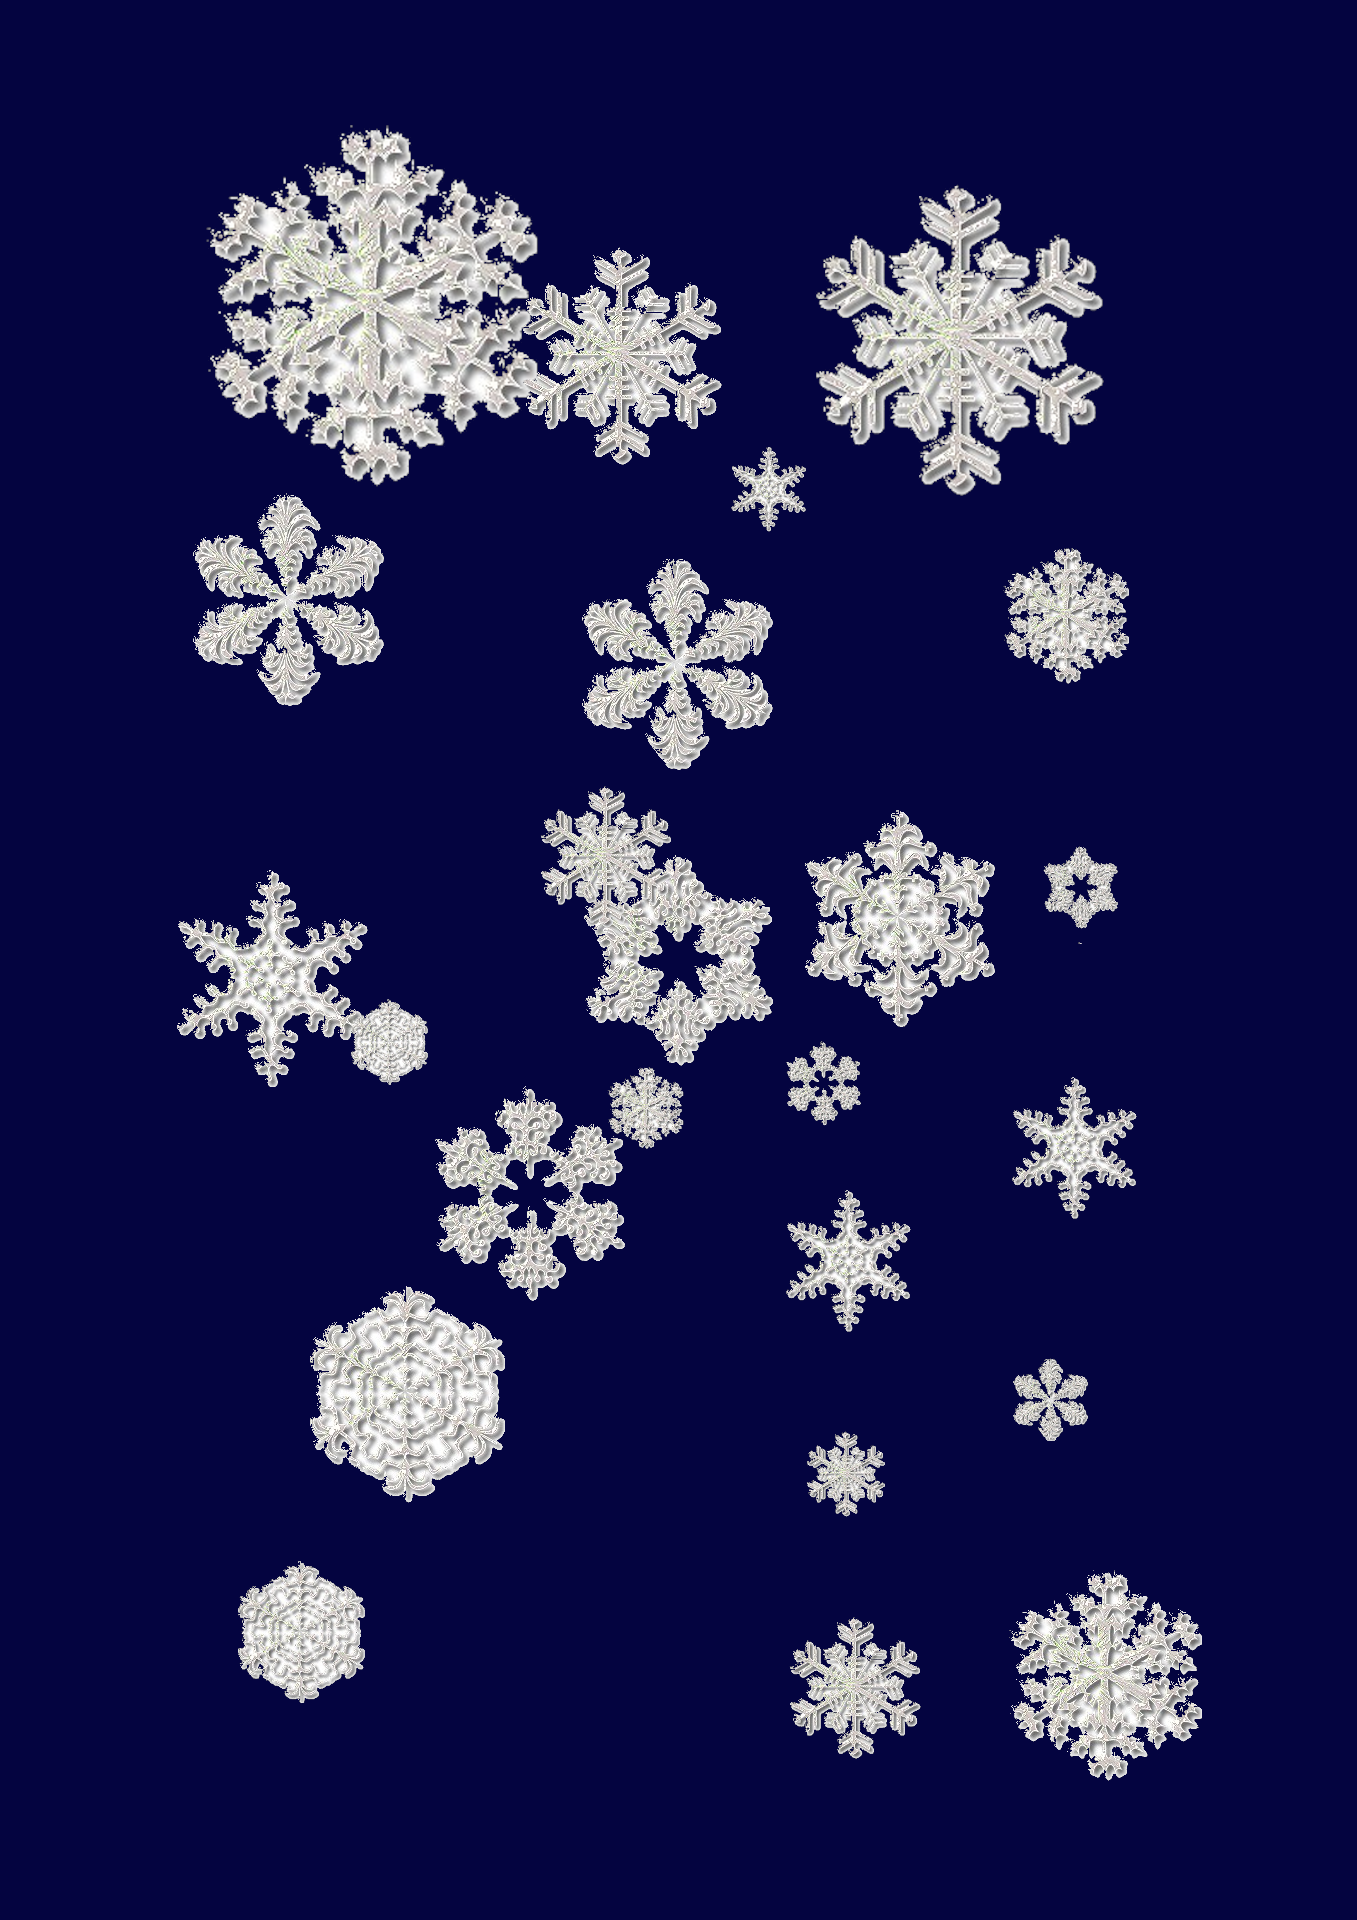 Snowflakes_Event_auflösung.png